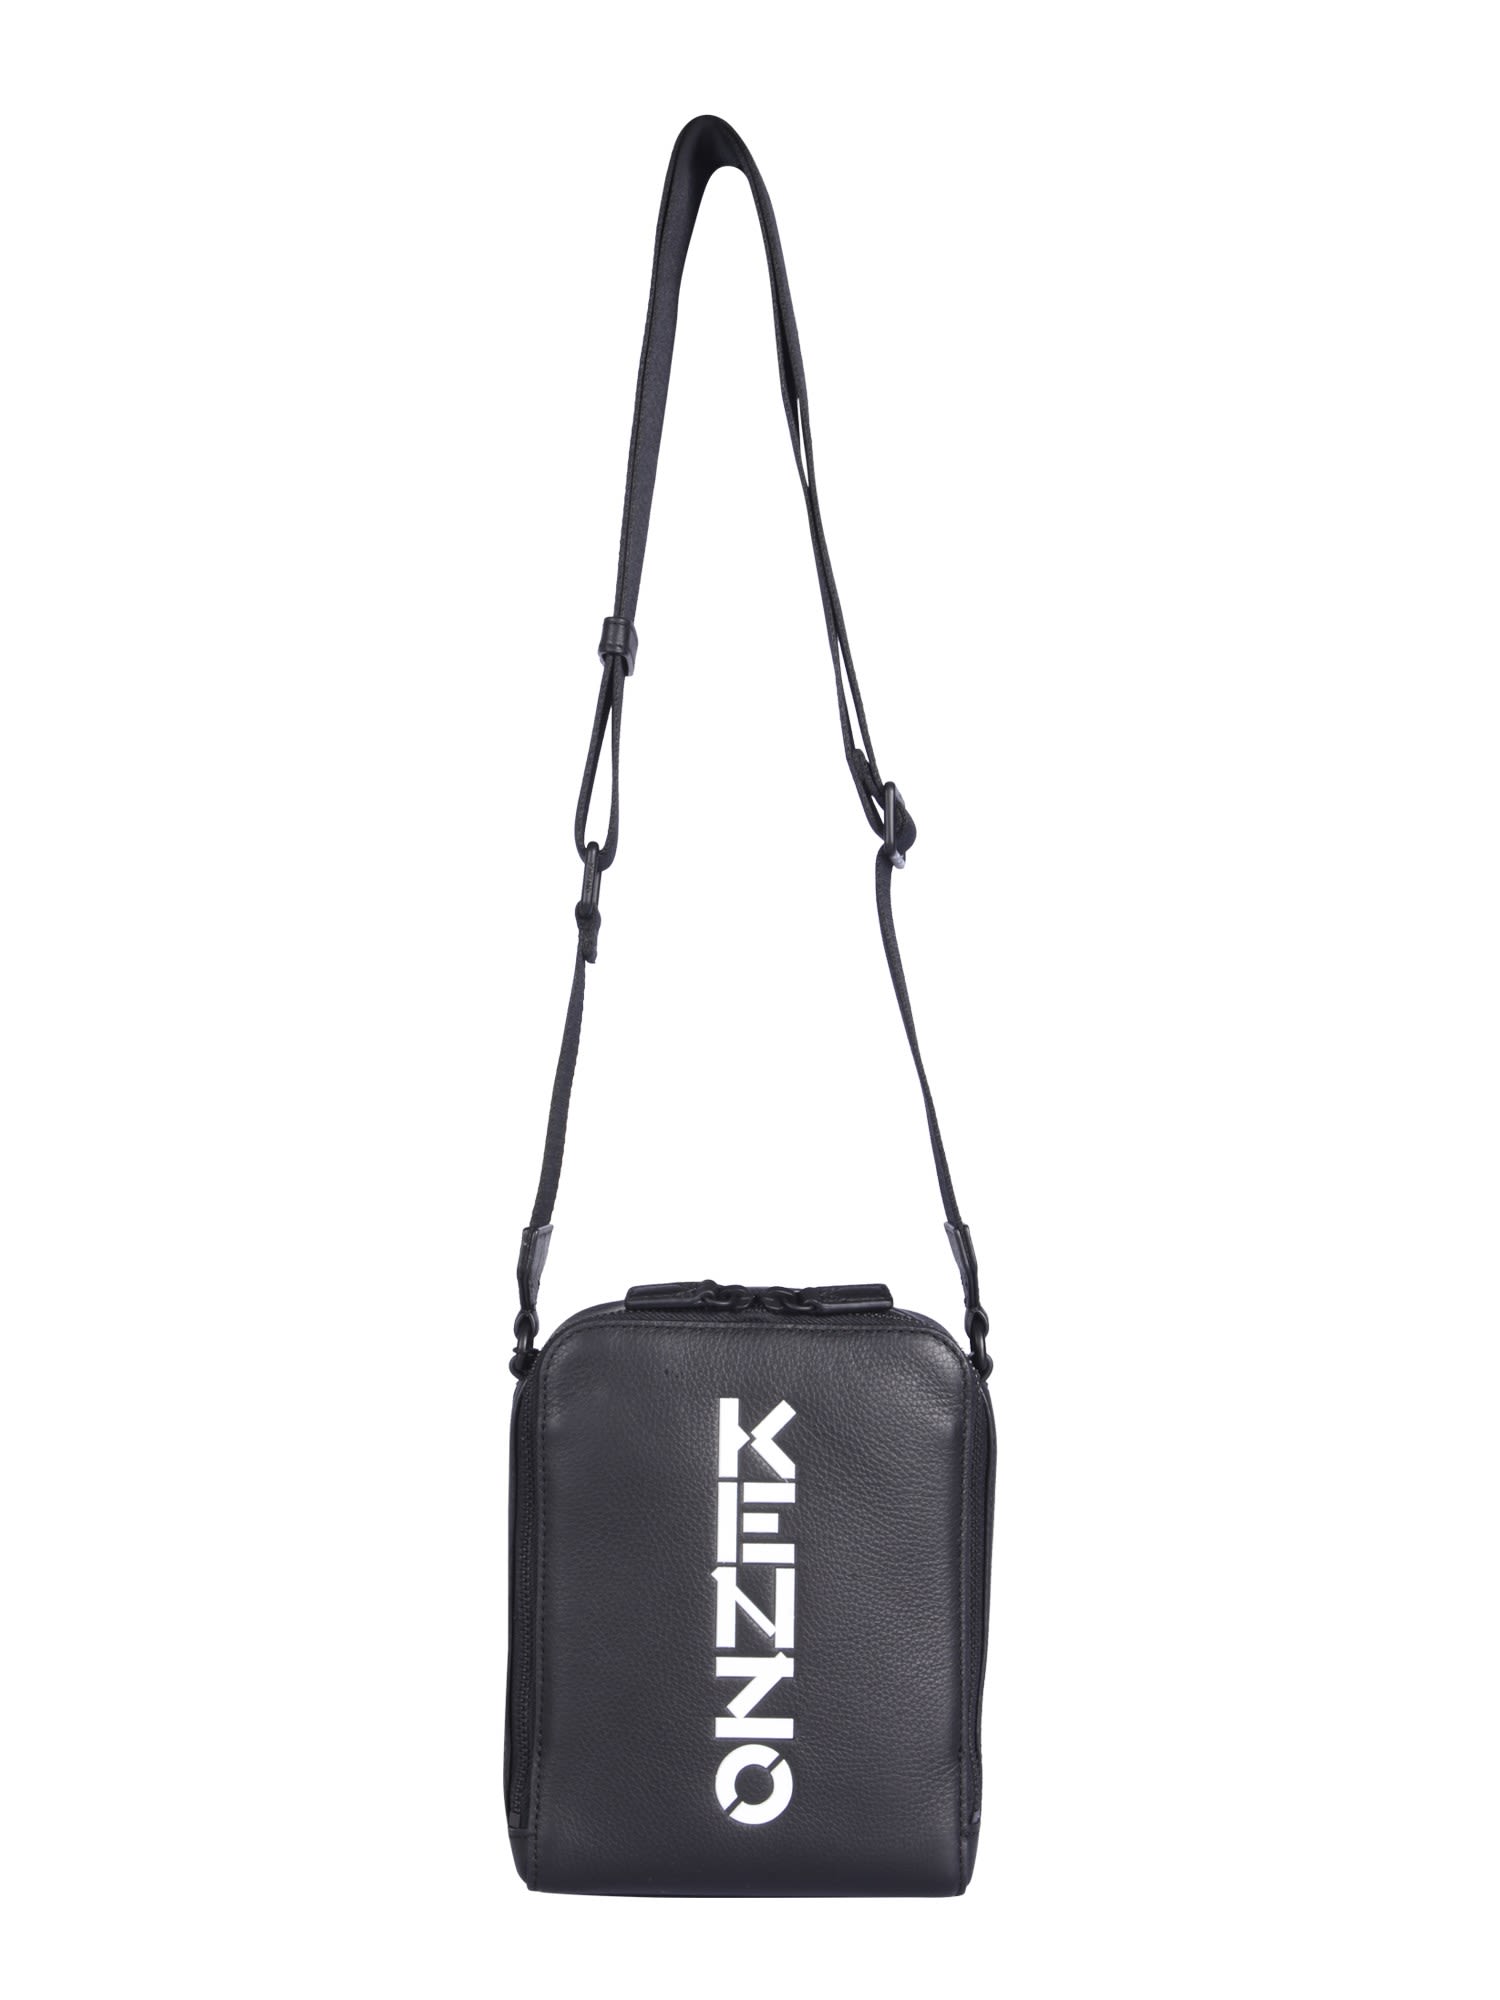 Kenzo Leather Shoulder Bag